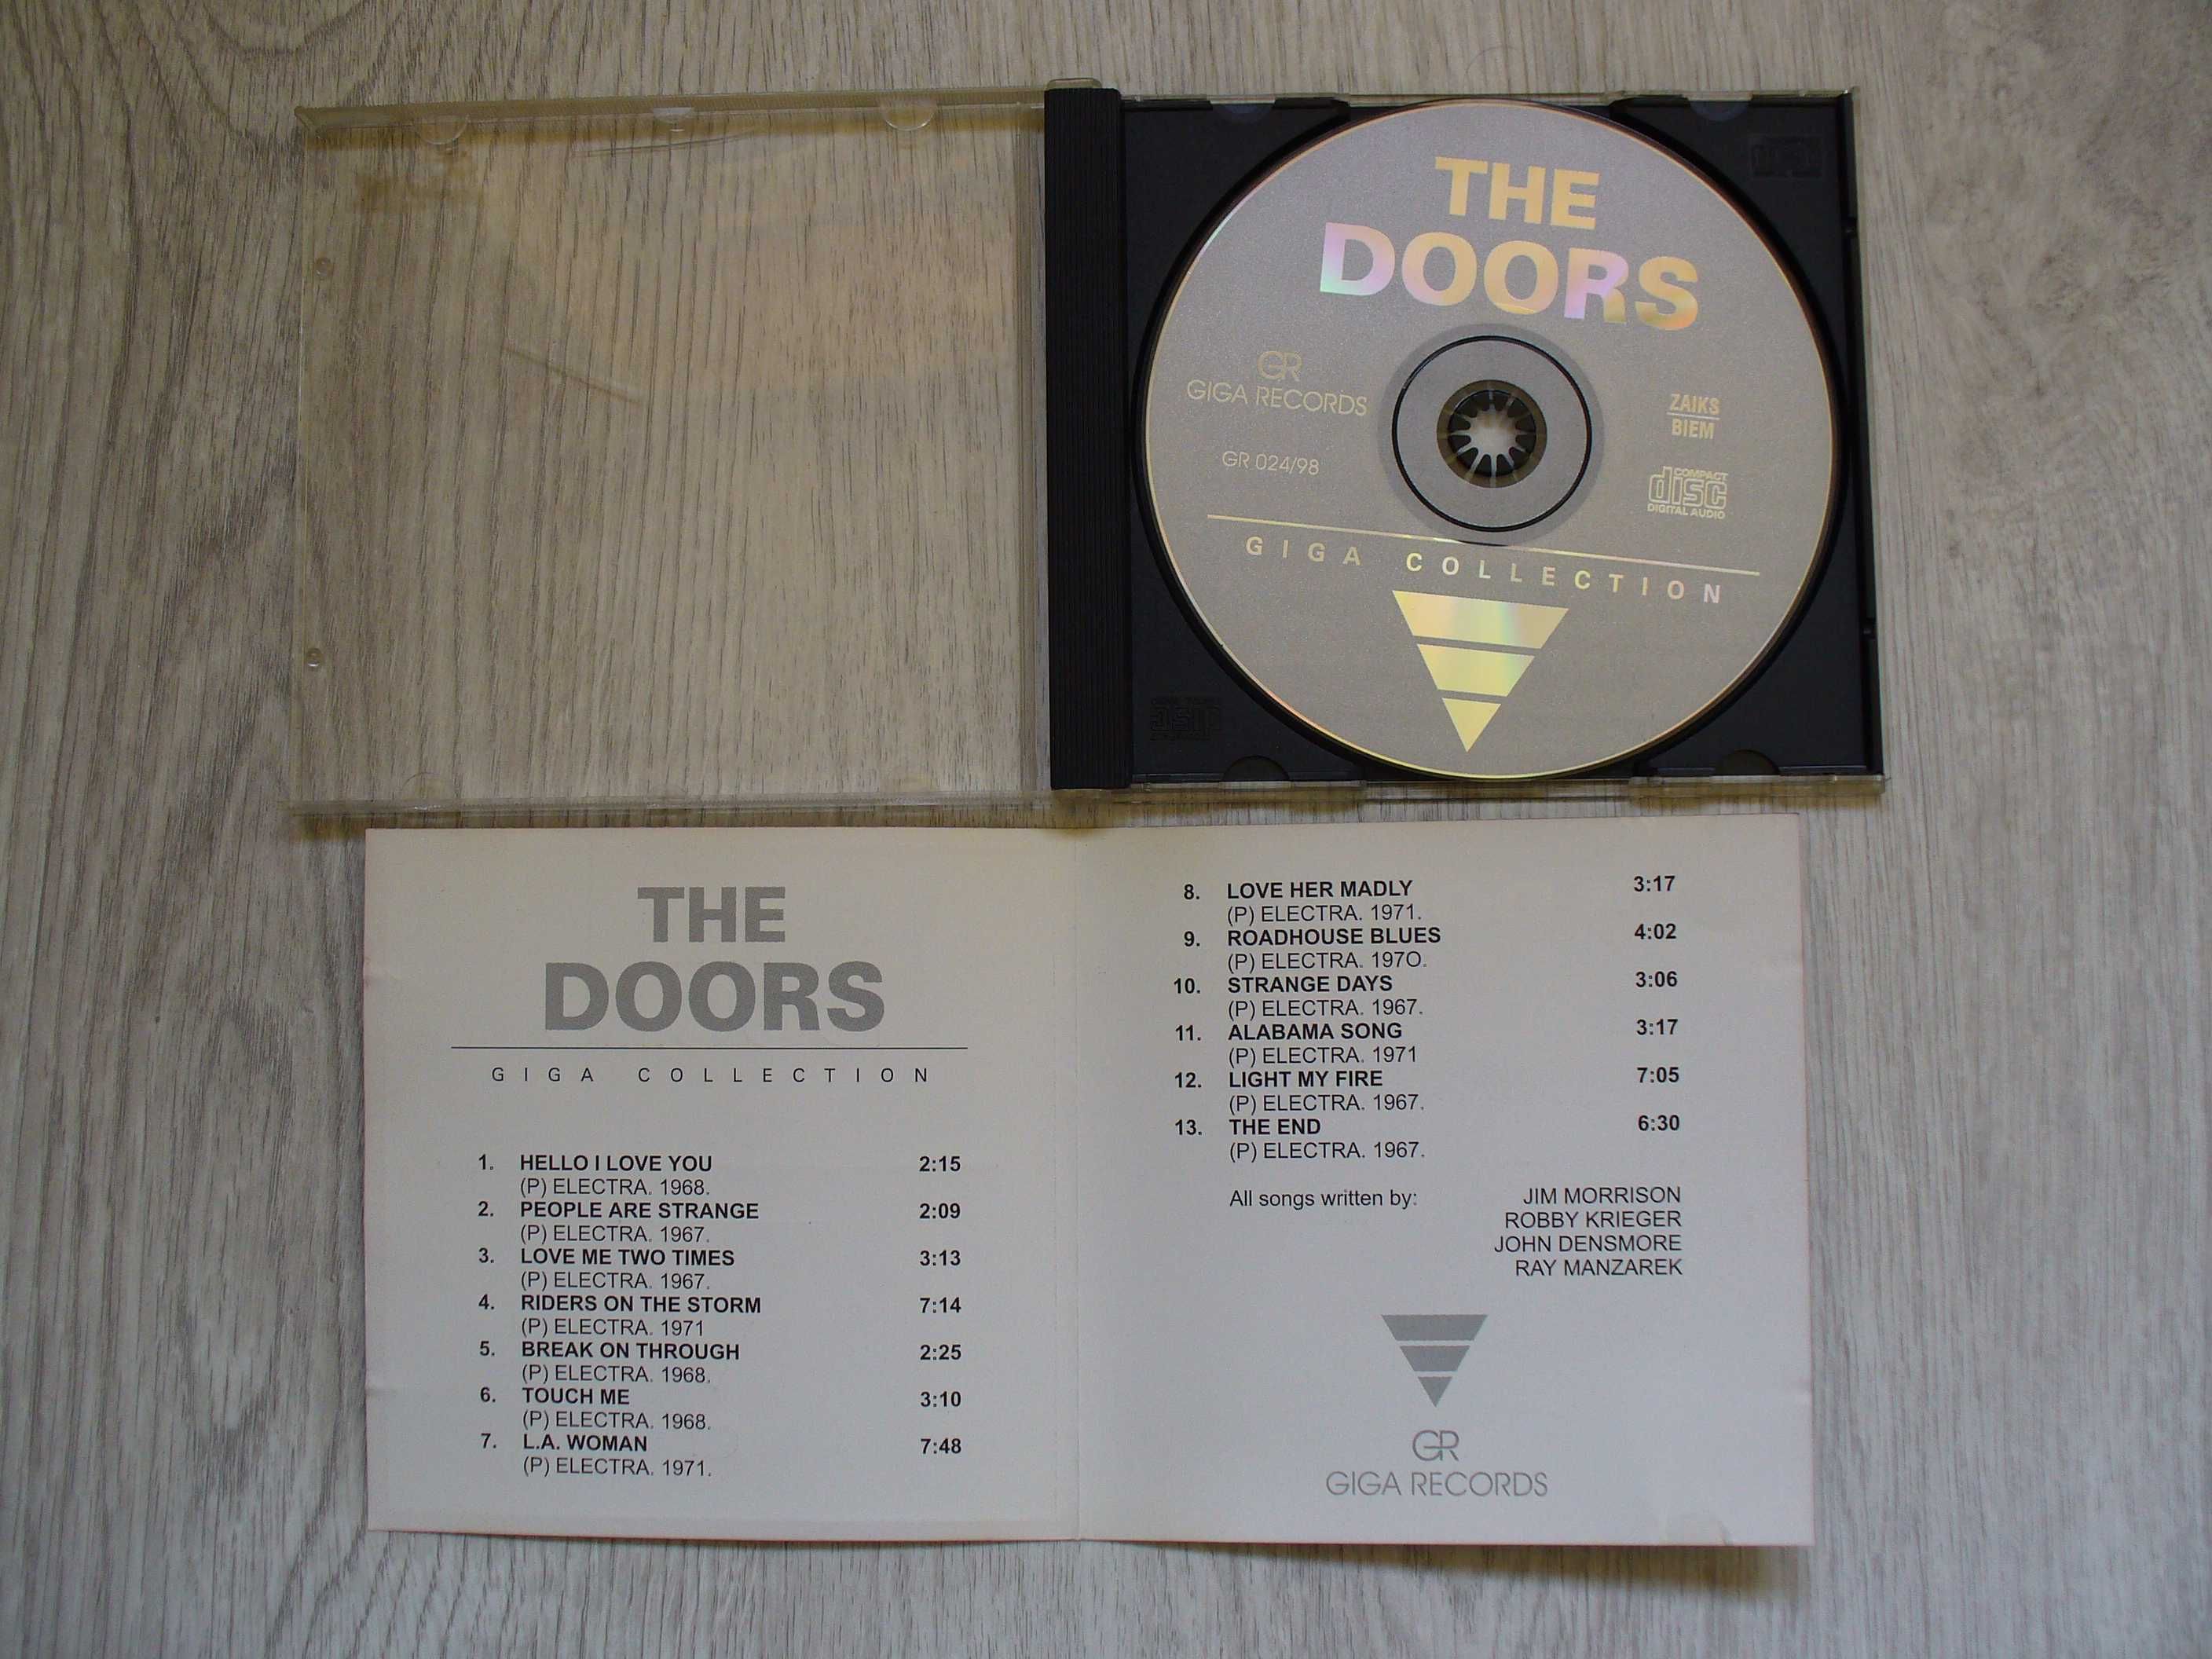 Płyta płyty CD THE DOORS The Best giga collection